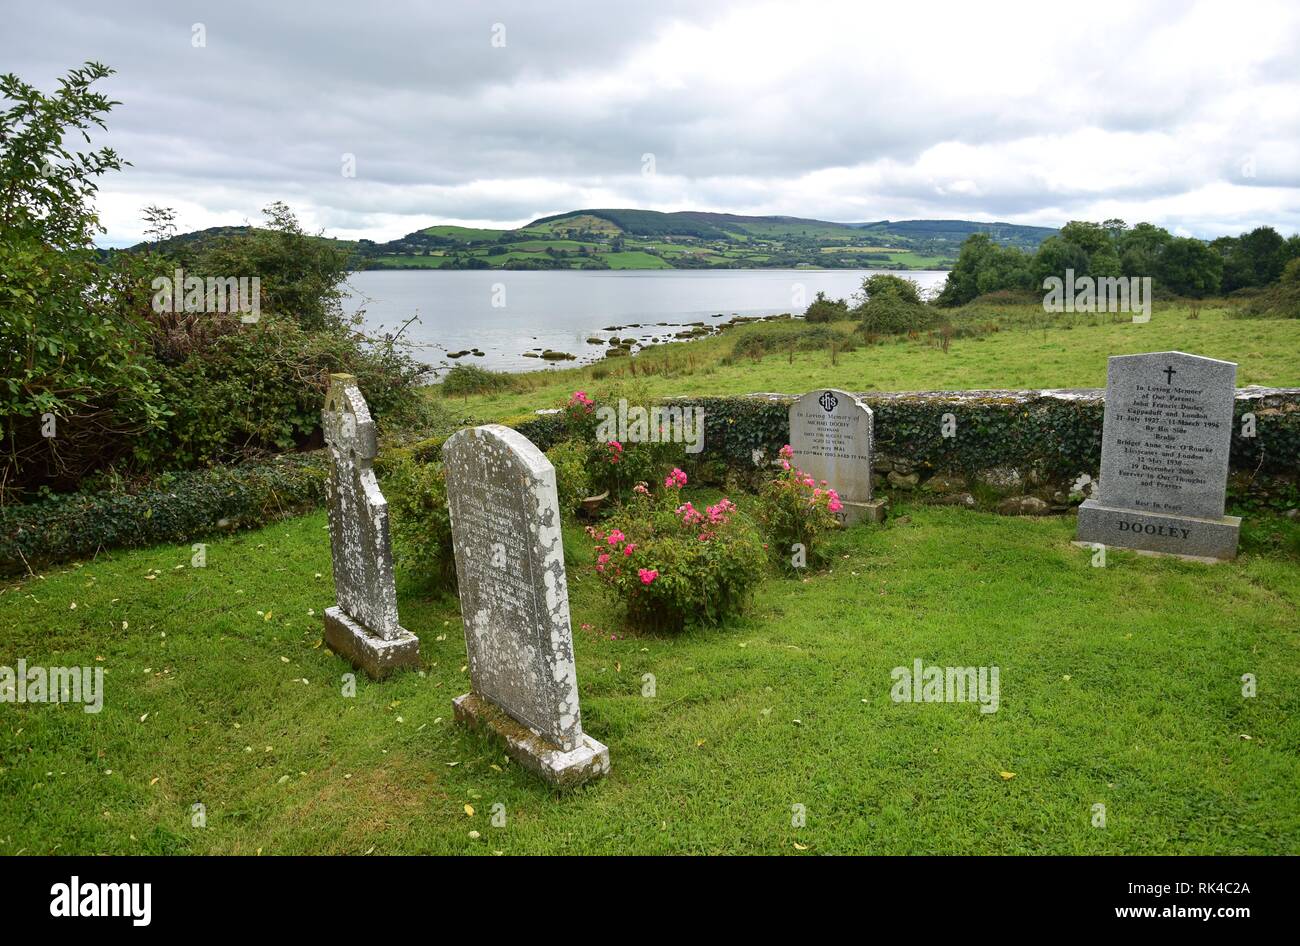 Grabsteine mit Inschriften auf Friedhof auf der heiligen Insel im Lough Derg in Irland, County Clare. In der Rückseite Lough Derg. Stockfoto